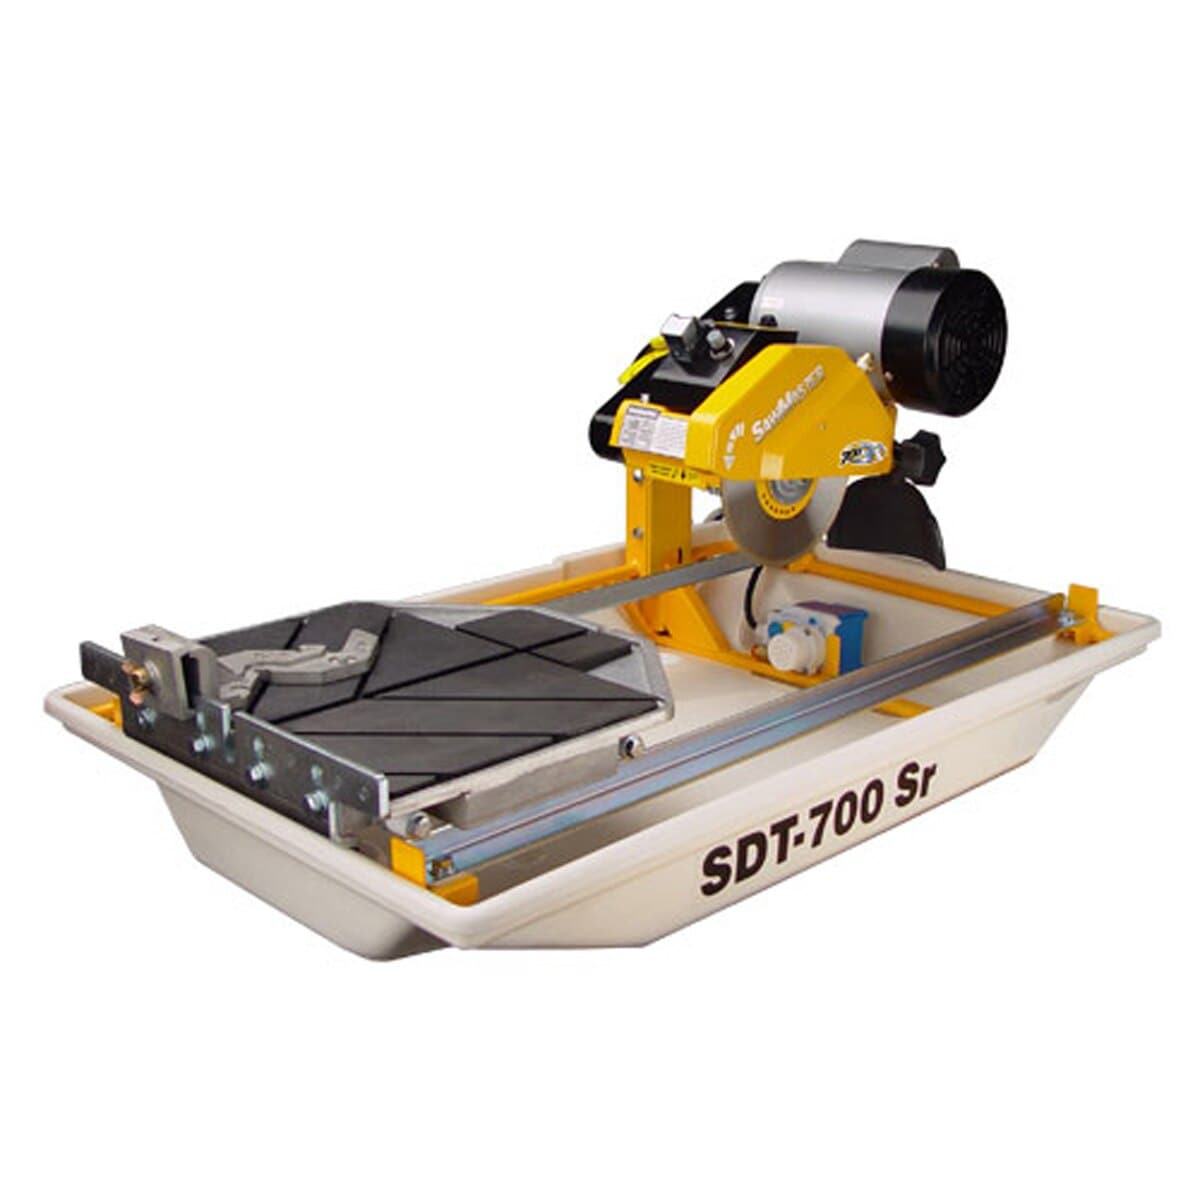 SawMaster SDT-710SR Tile Saw - SawMaster